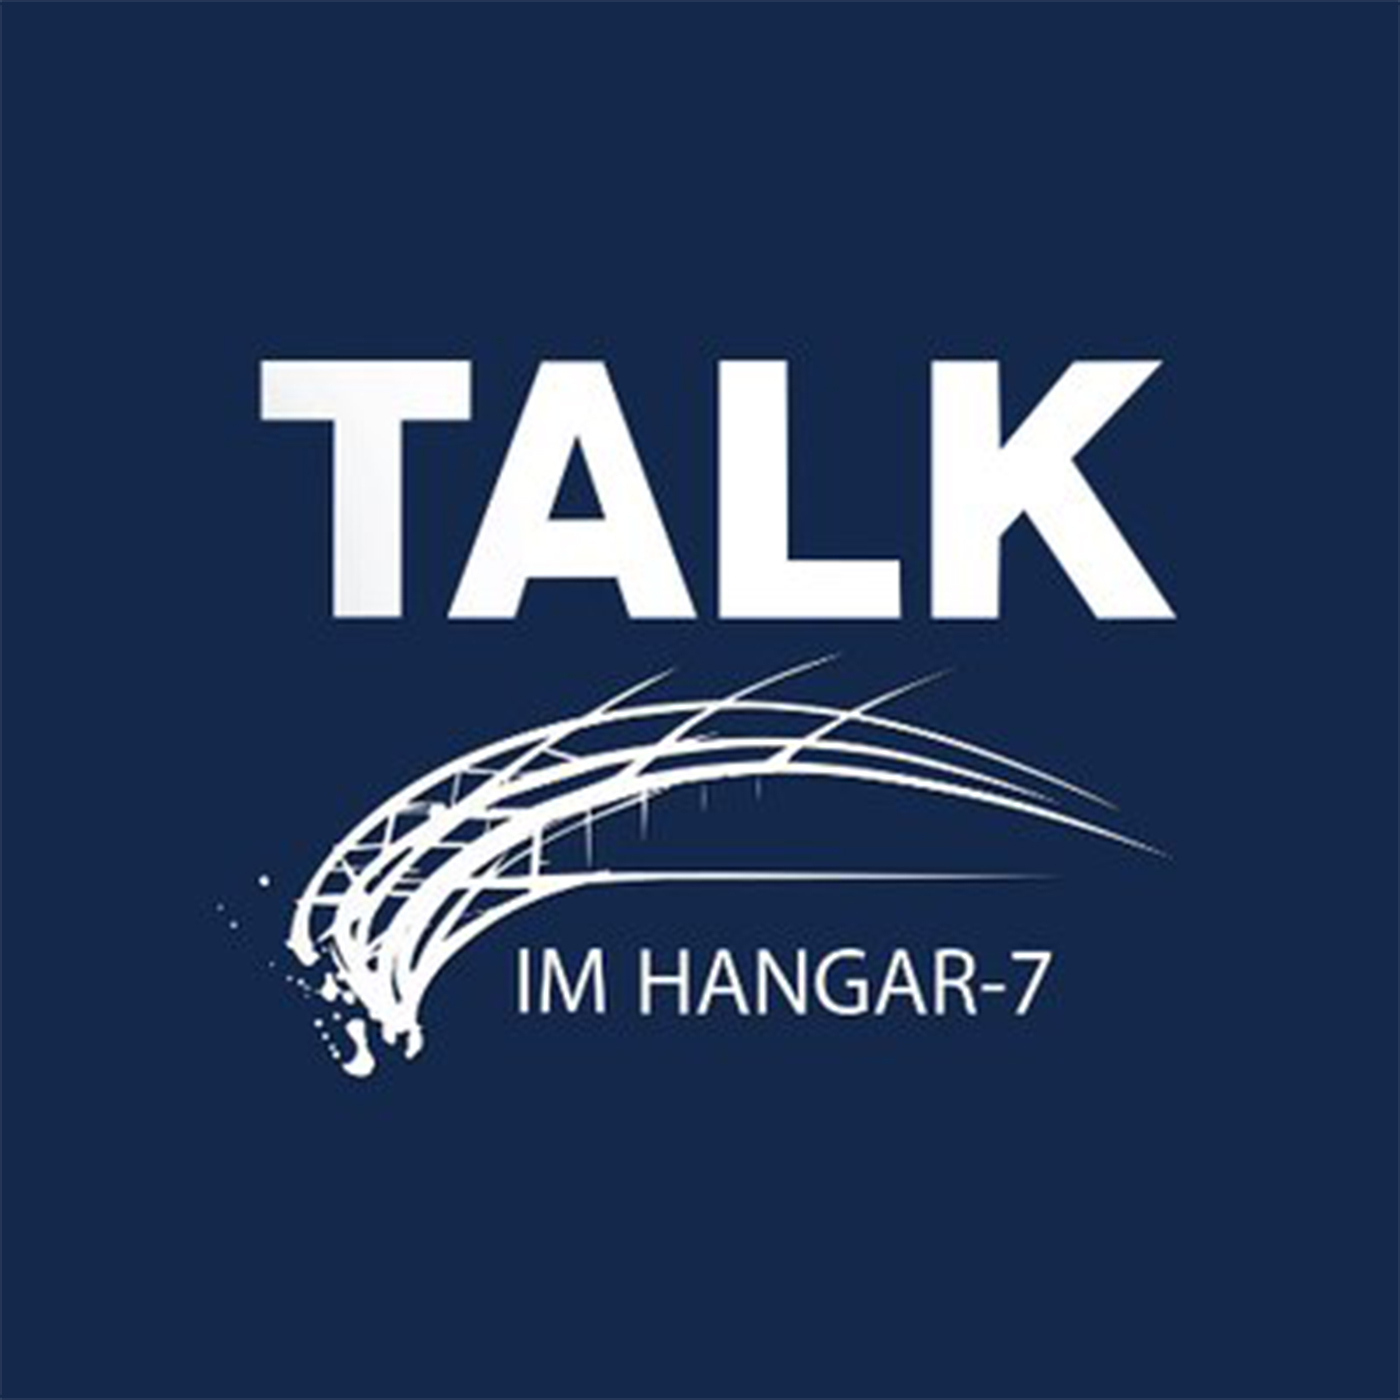 Talk im Hangar-7: Einverstanden oder ausgegrenzt - Wie viel Meinung halten wir aus?